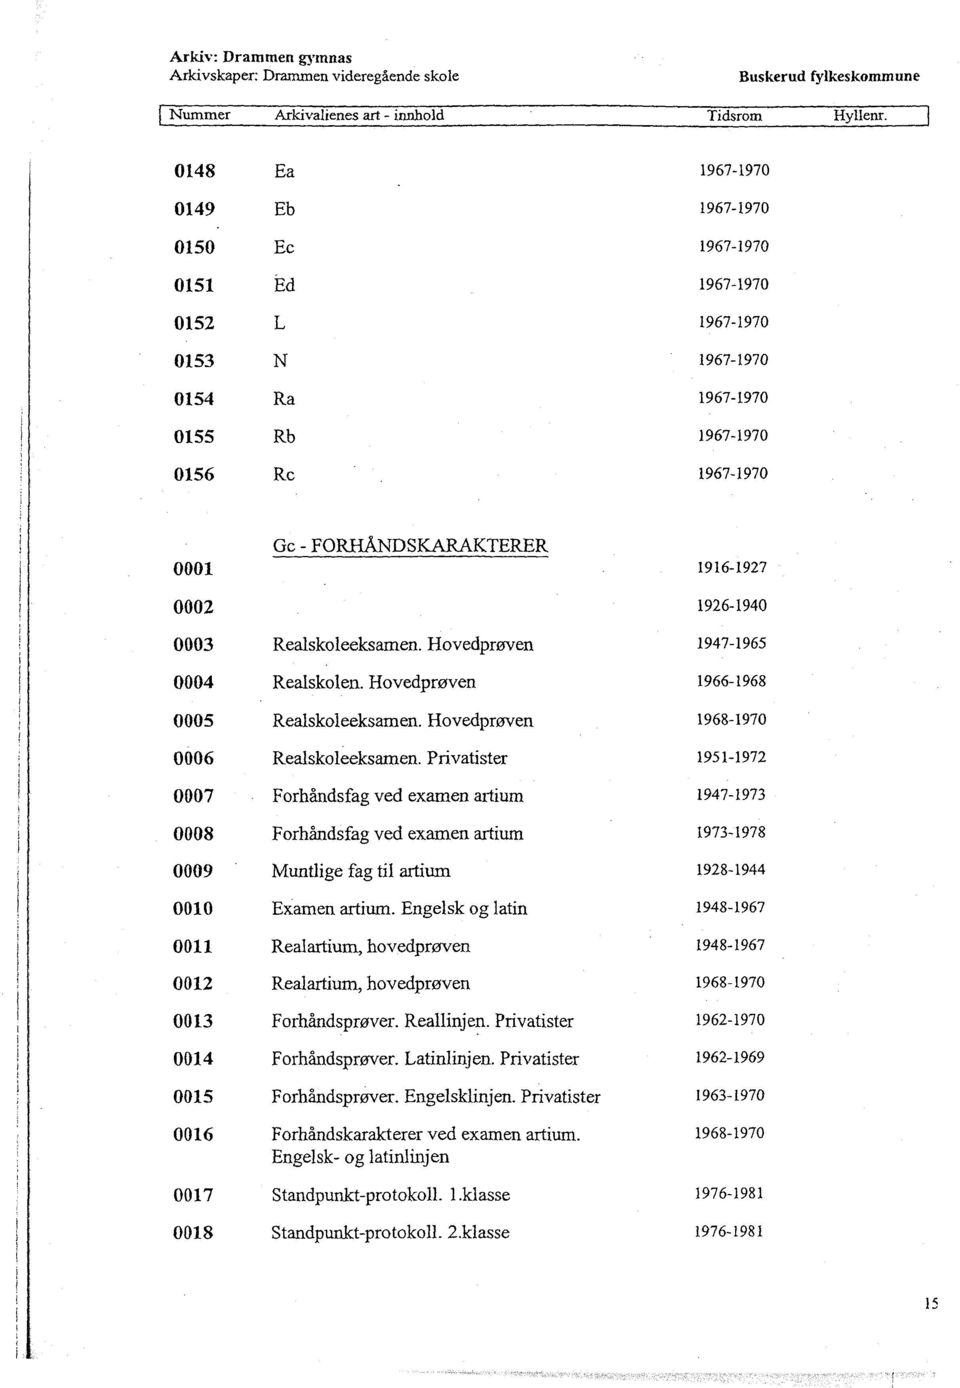 Hovedprøven 1966-1968 0005 Realskoleeksamen. Hovedprøven 1968-1970 0006 Realskoleeksarnen.